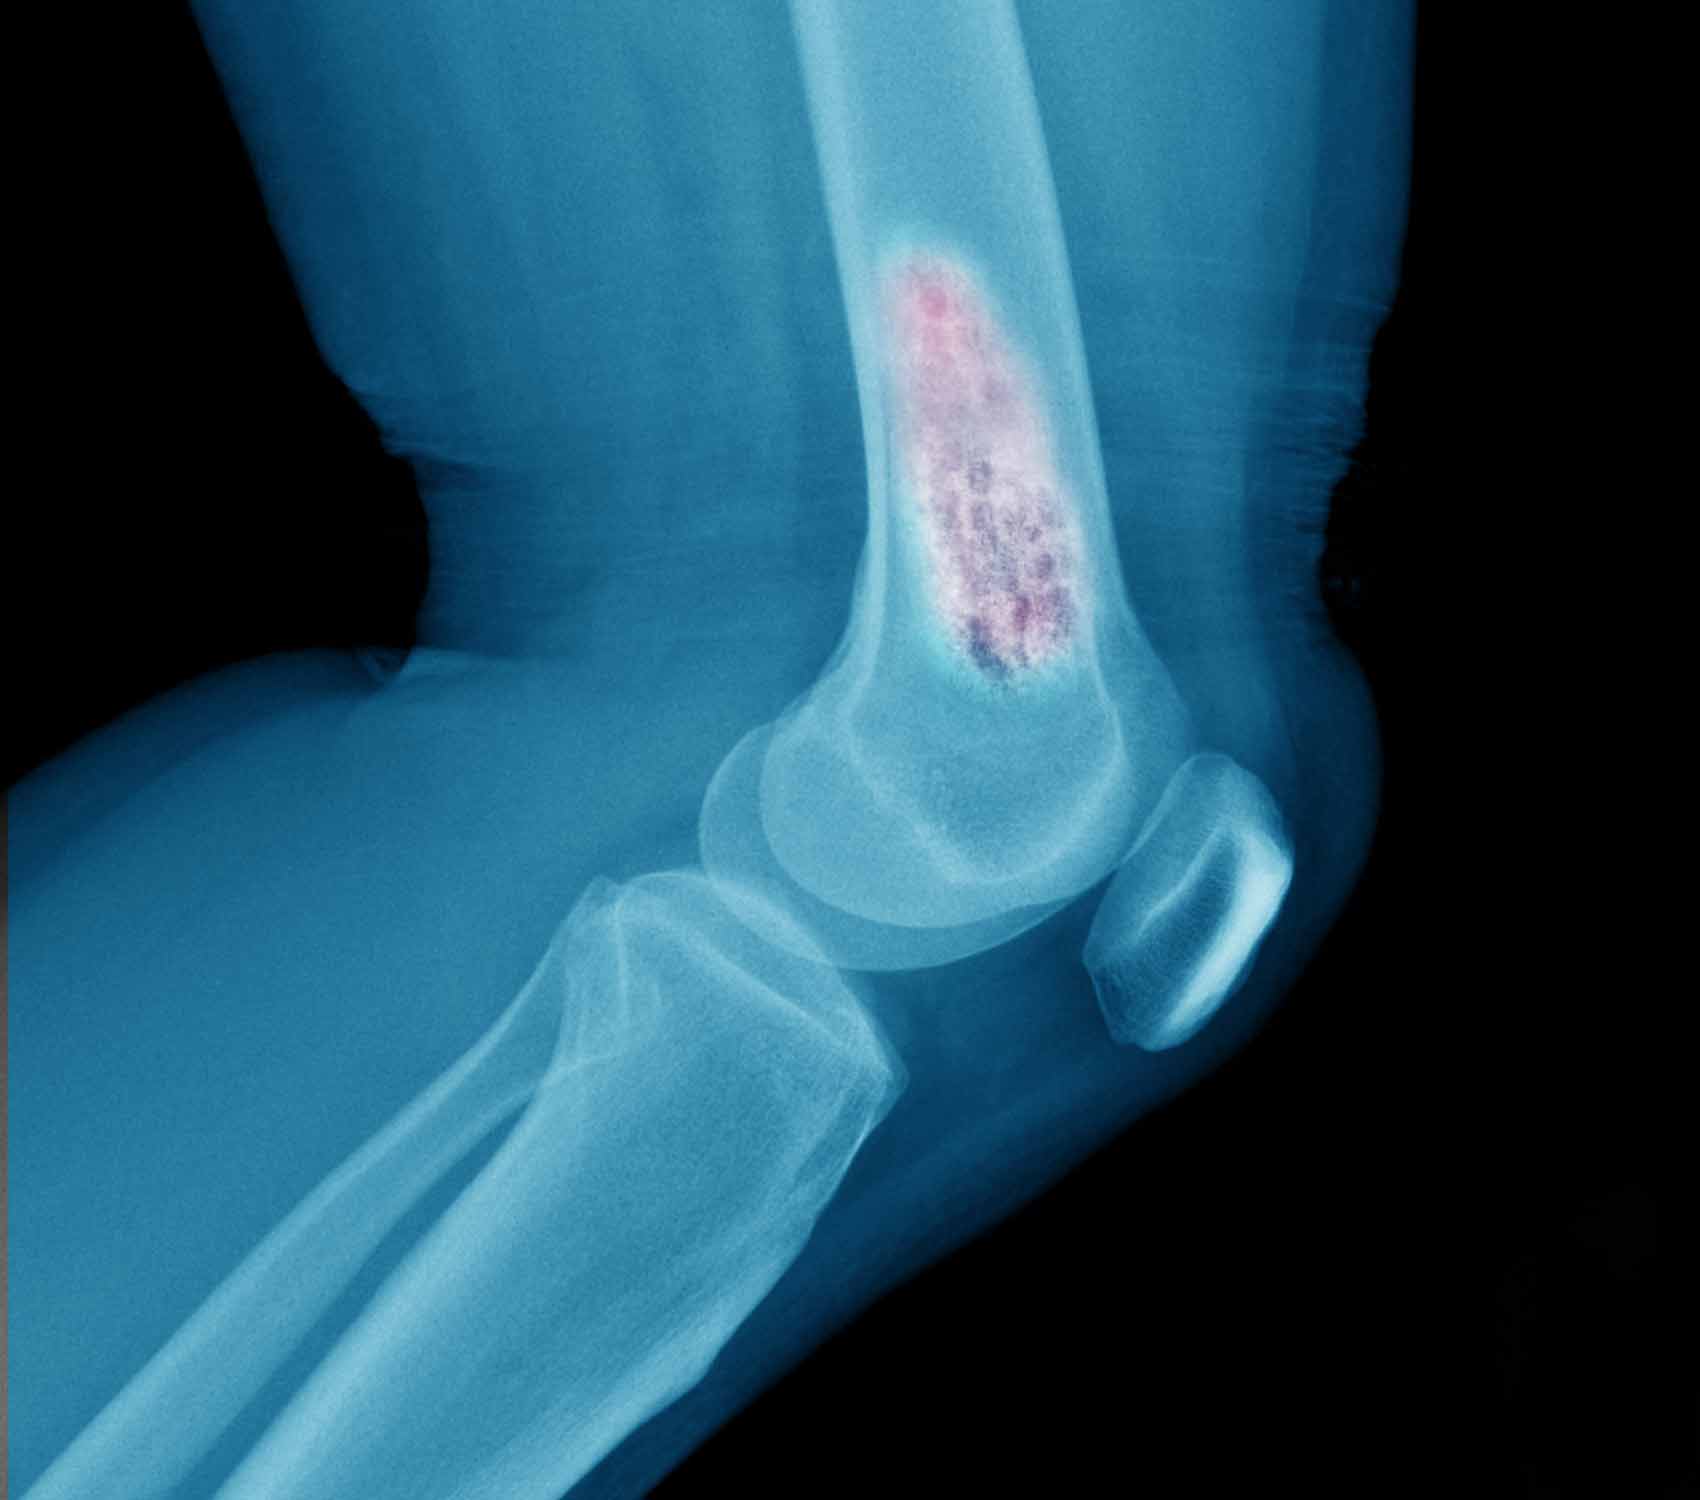 x-ray of bone cancer in leg